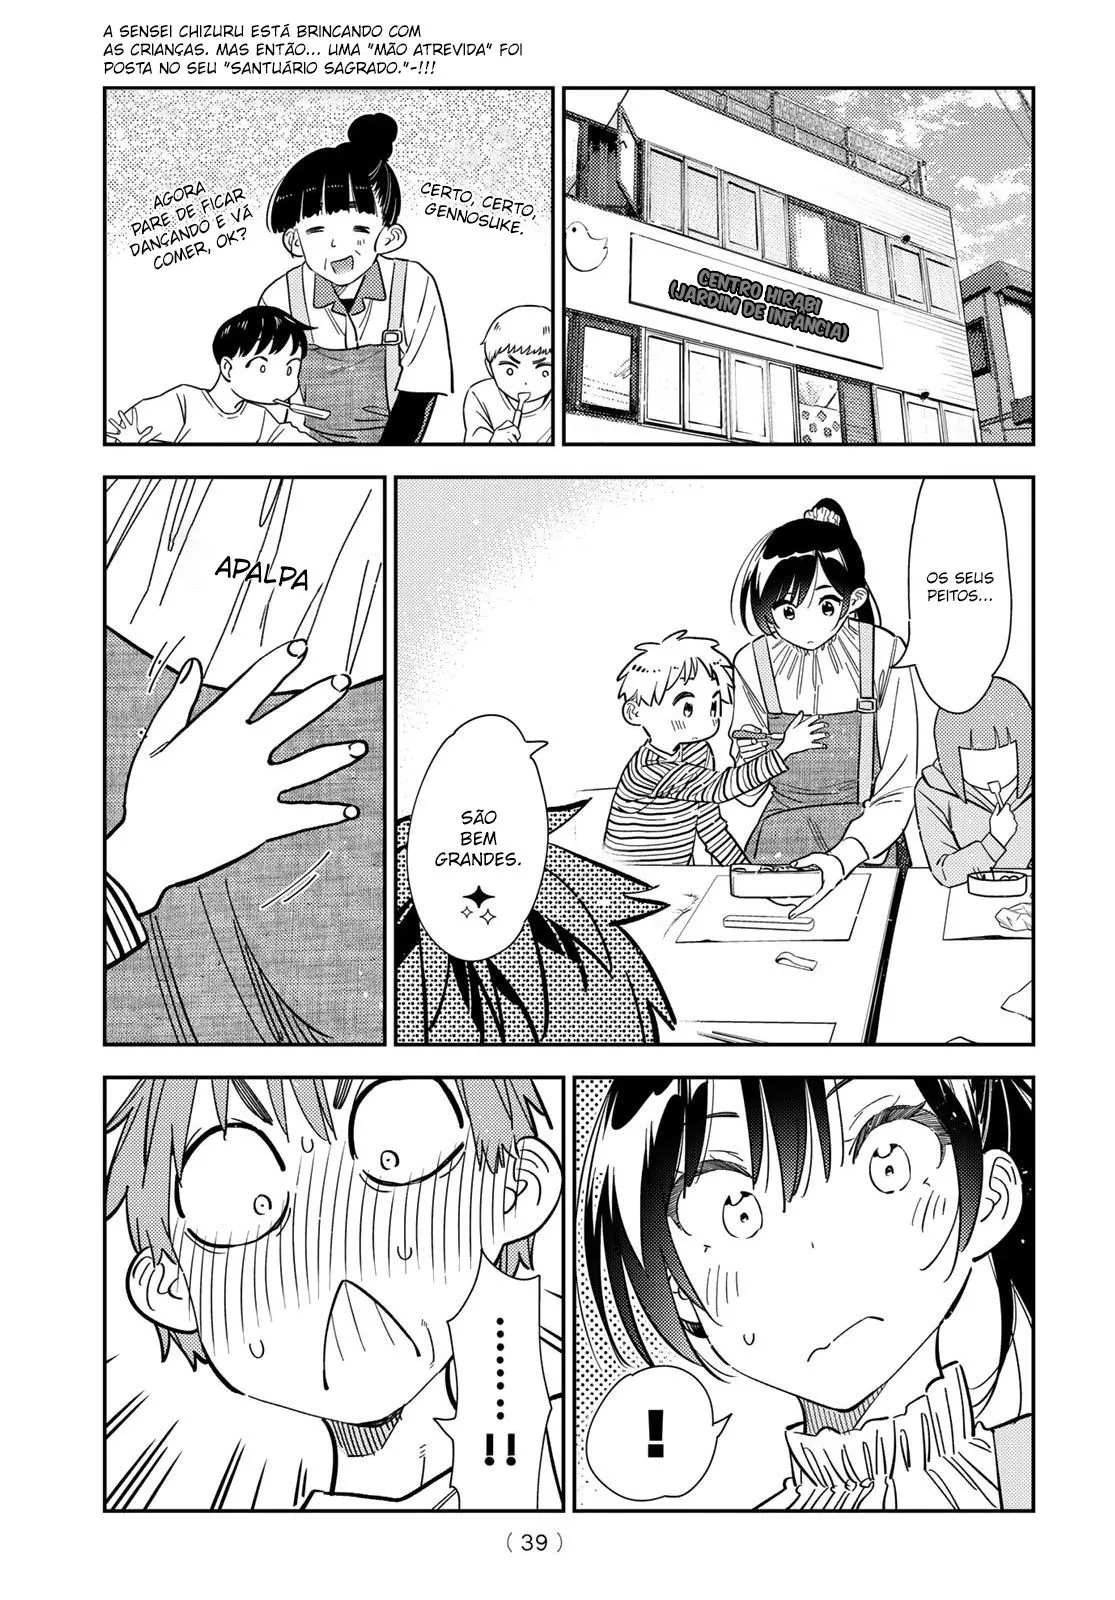 Kanojo, Okarishimasu Capítulo 265 - Manga Online